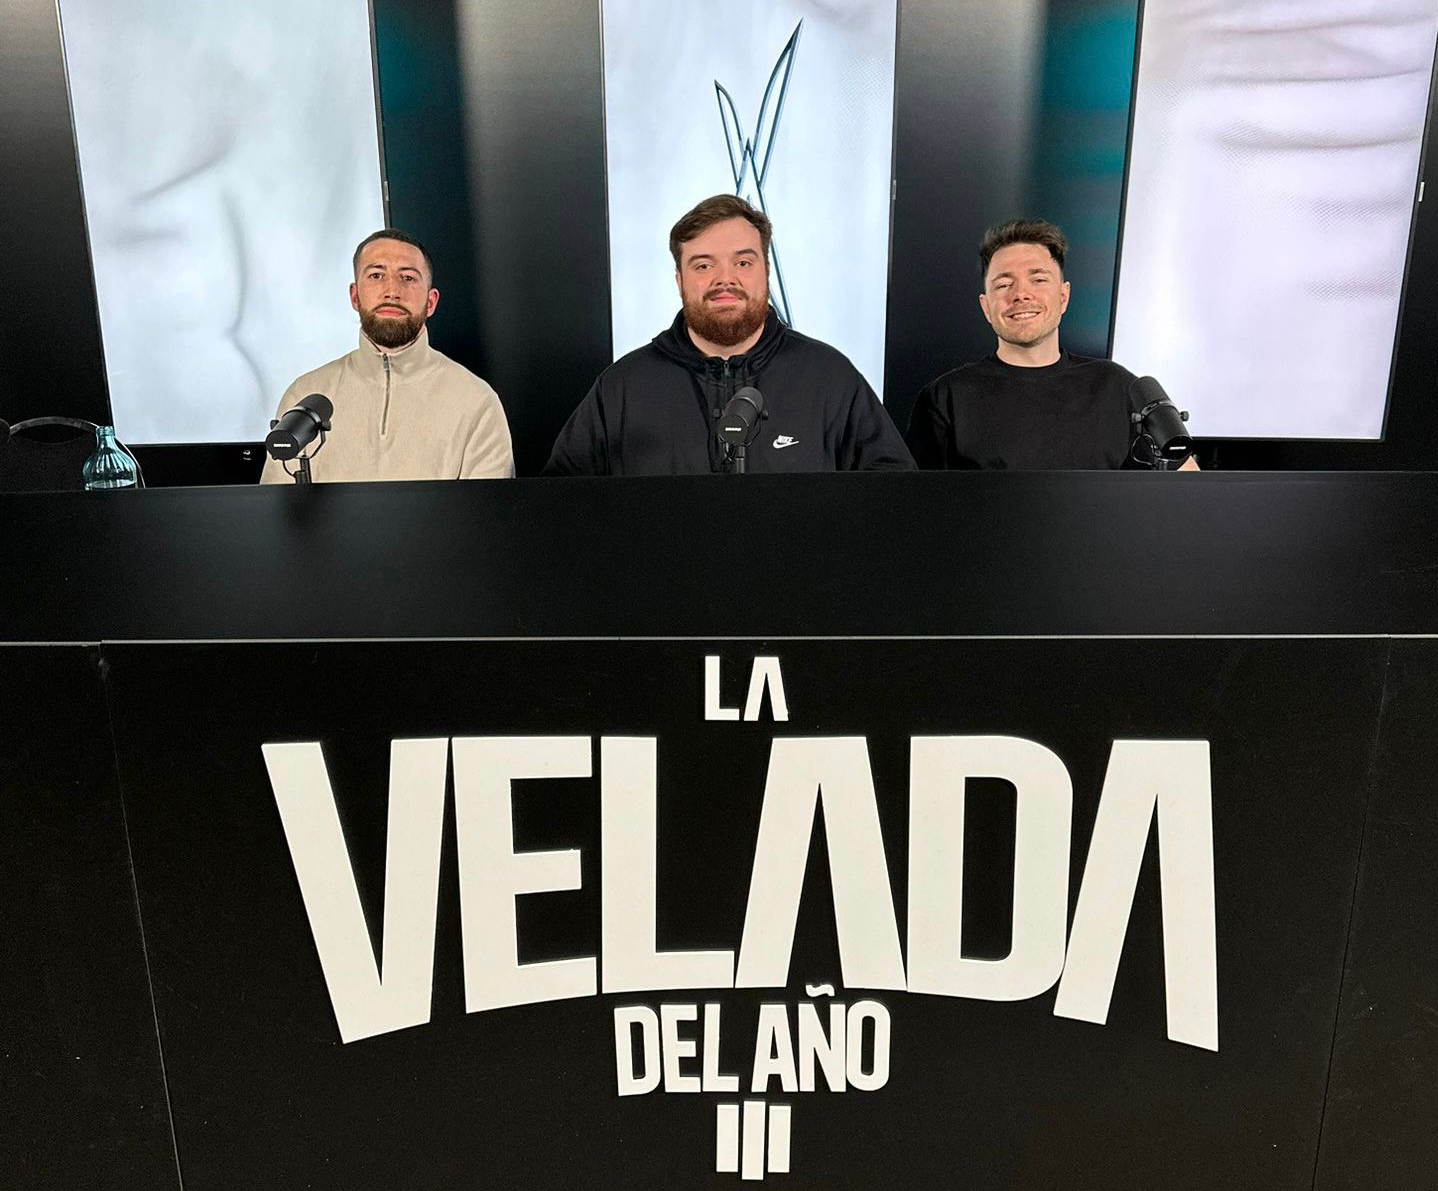 La Velada del Año 3, the boxing event, the most watched live stream